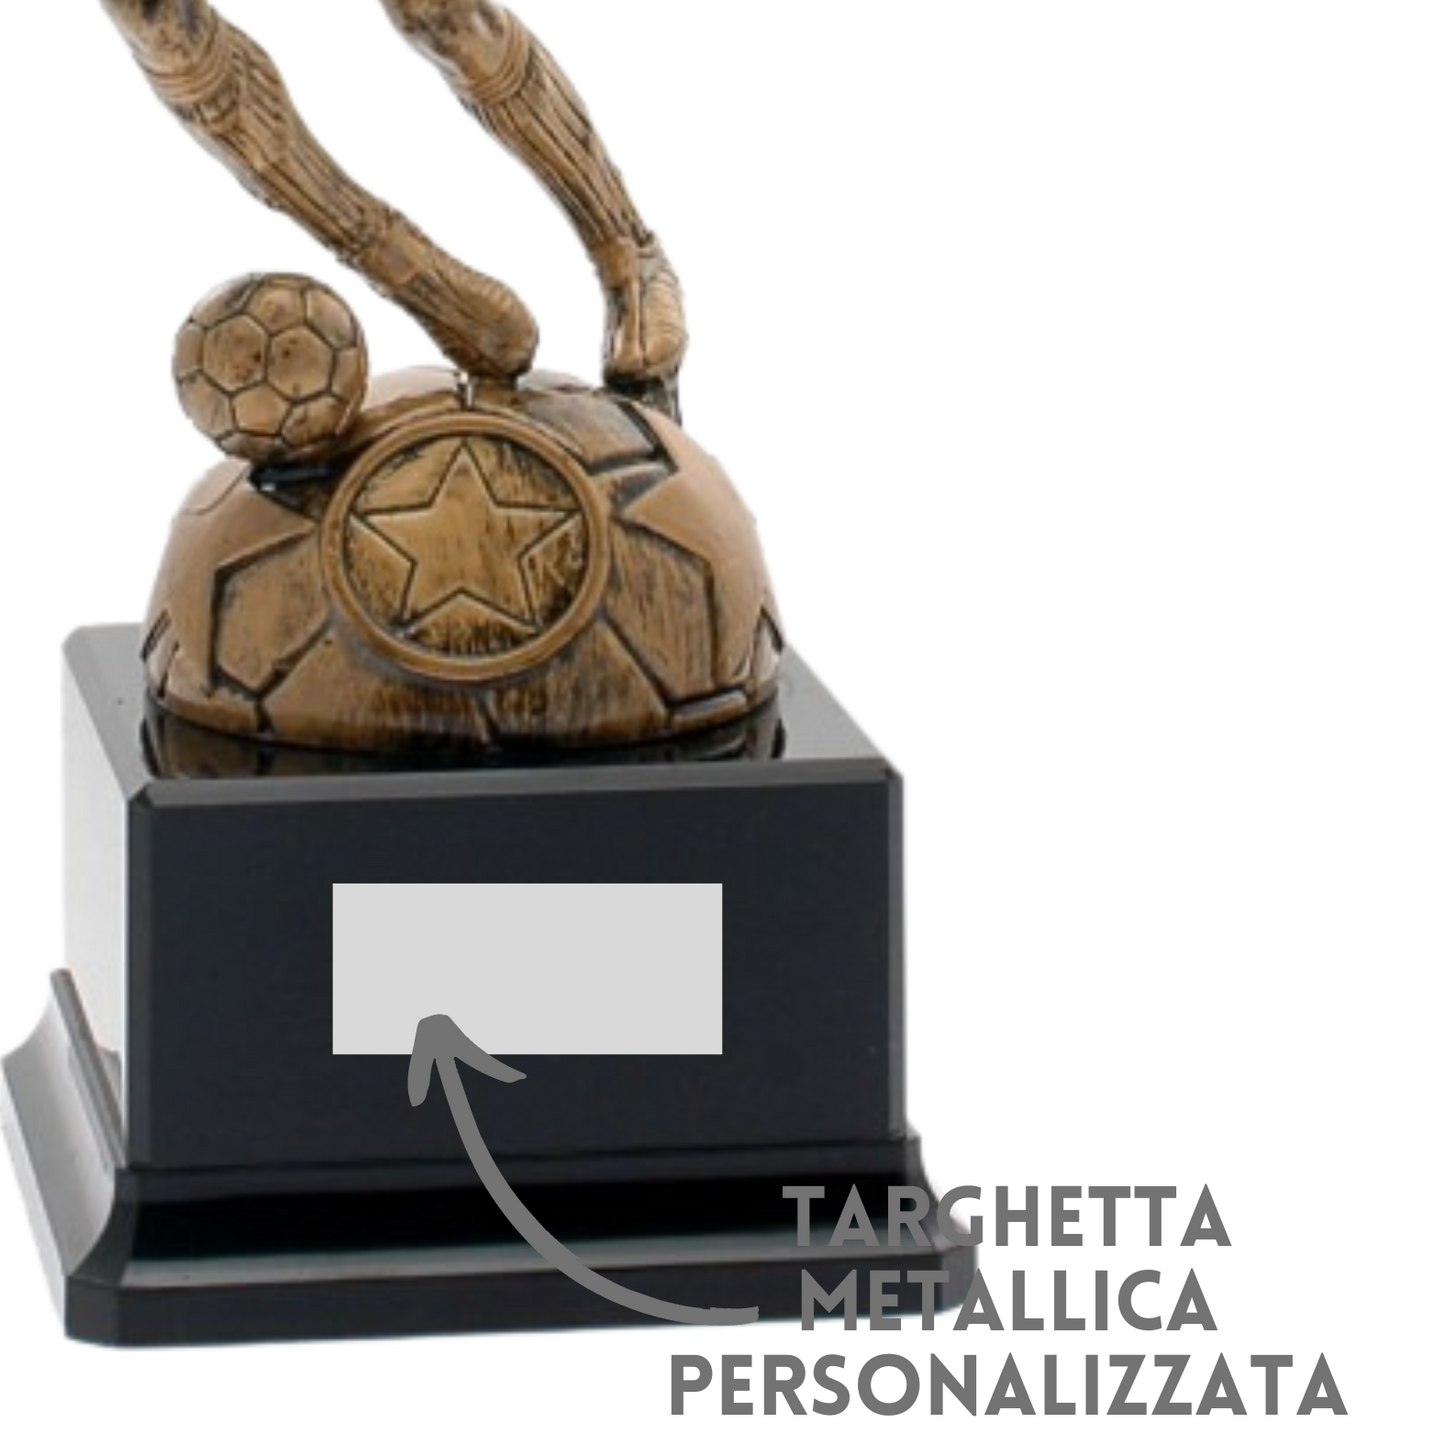 Premiazioni personalizzate premio calcio 14.543